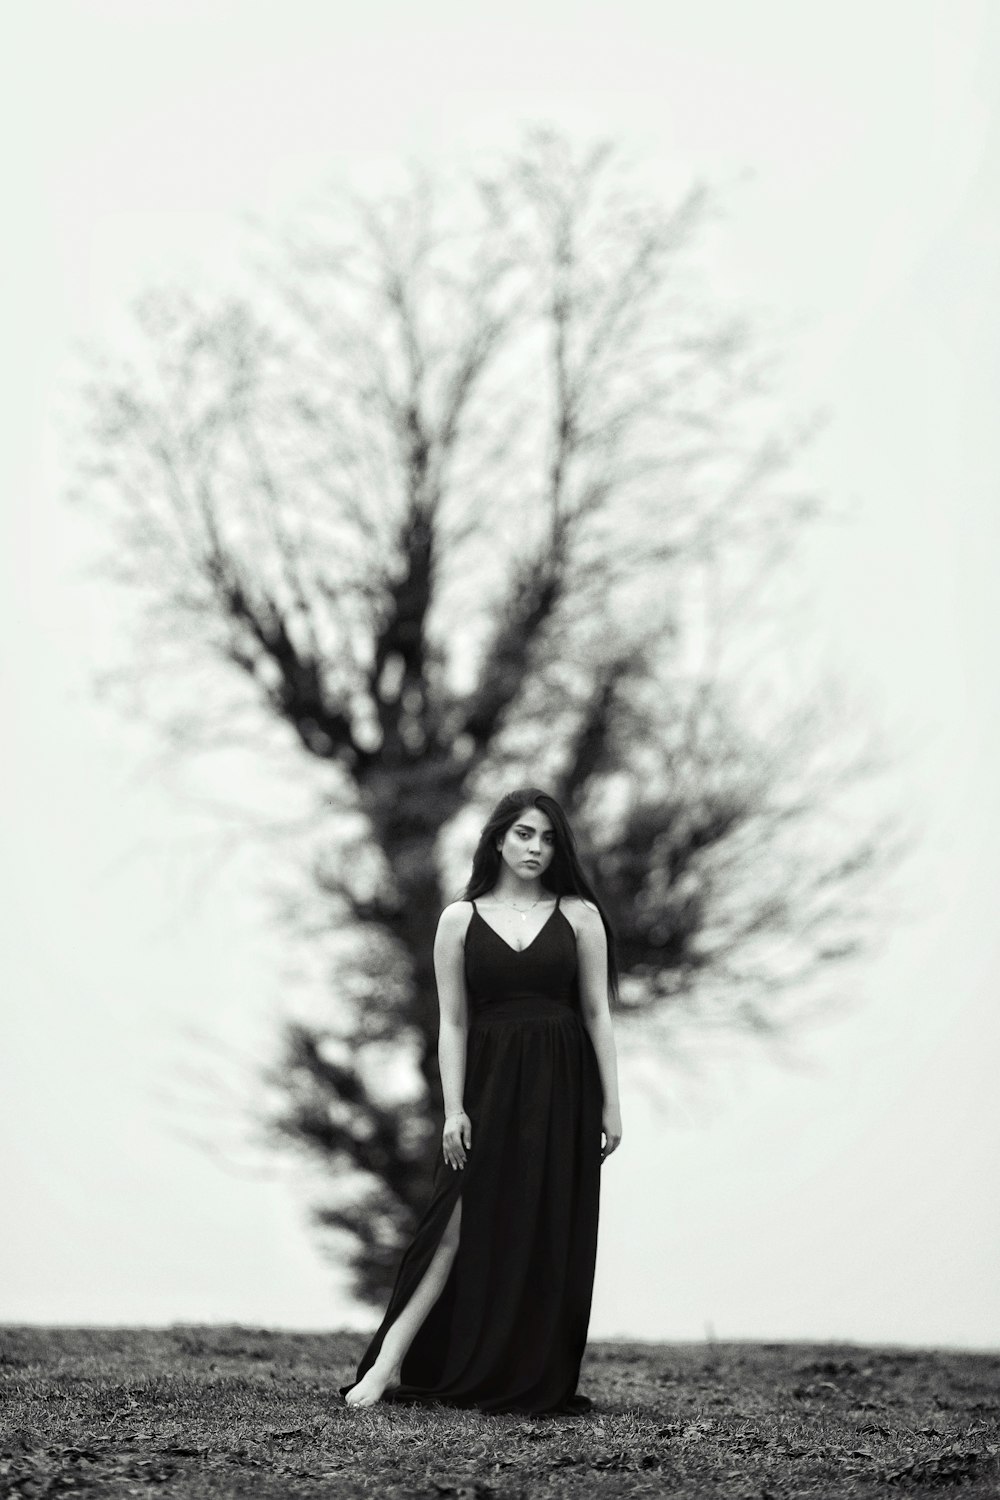 긴 검은 드레스를 입은 여자가 나무 앞에 서 있다